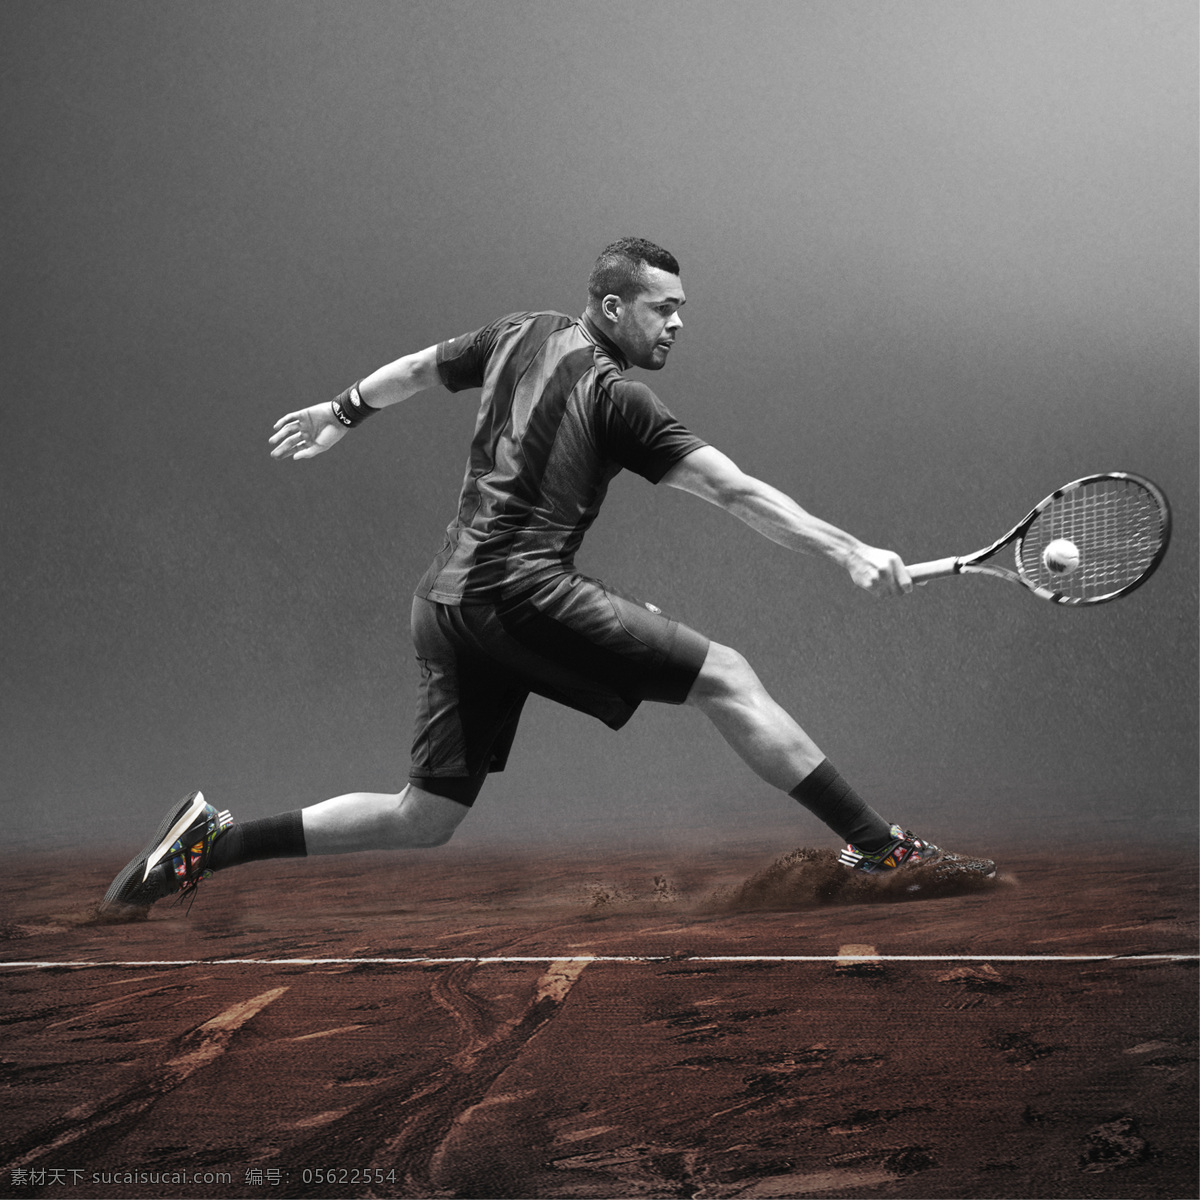 网球运动装备 adidas 网球 运动 装备 宣传 广告 生活百科 体育用品